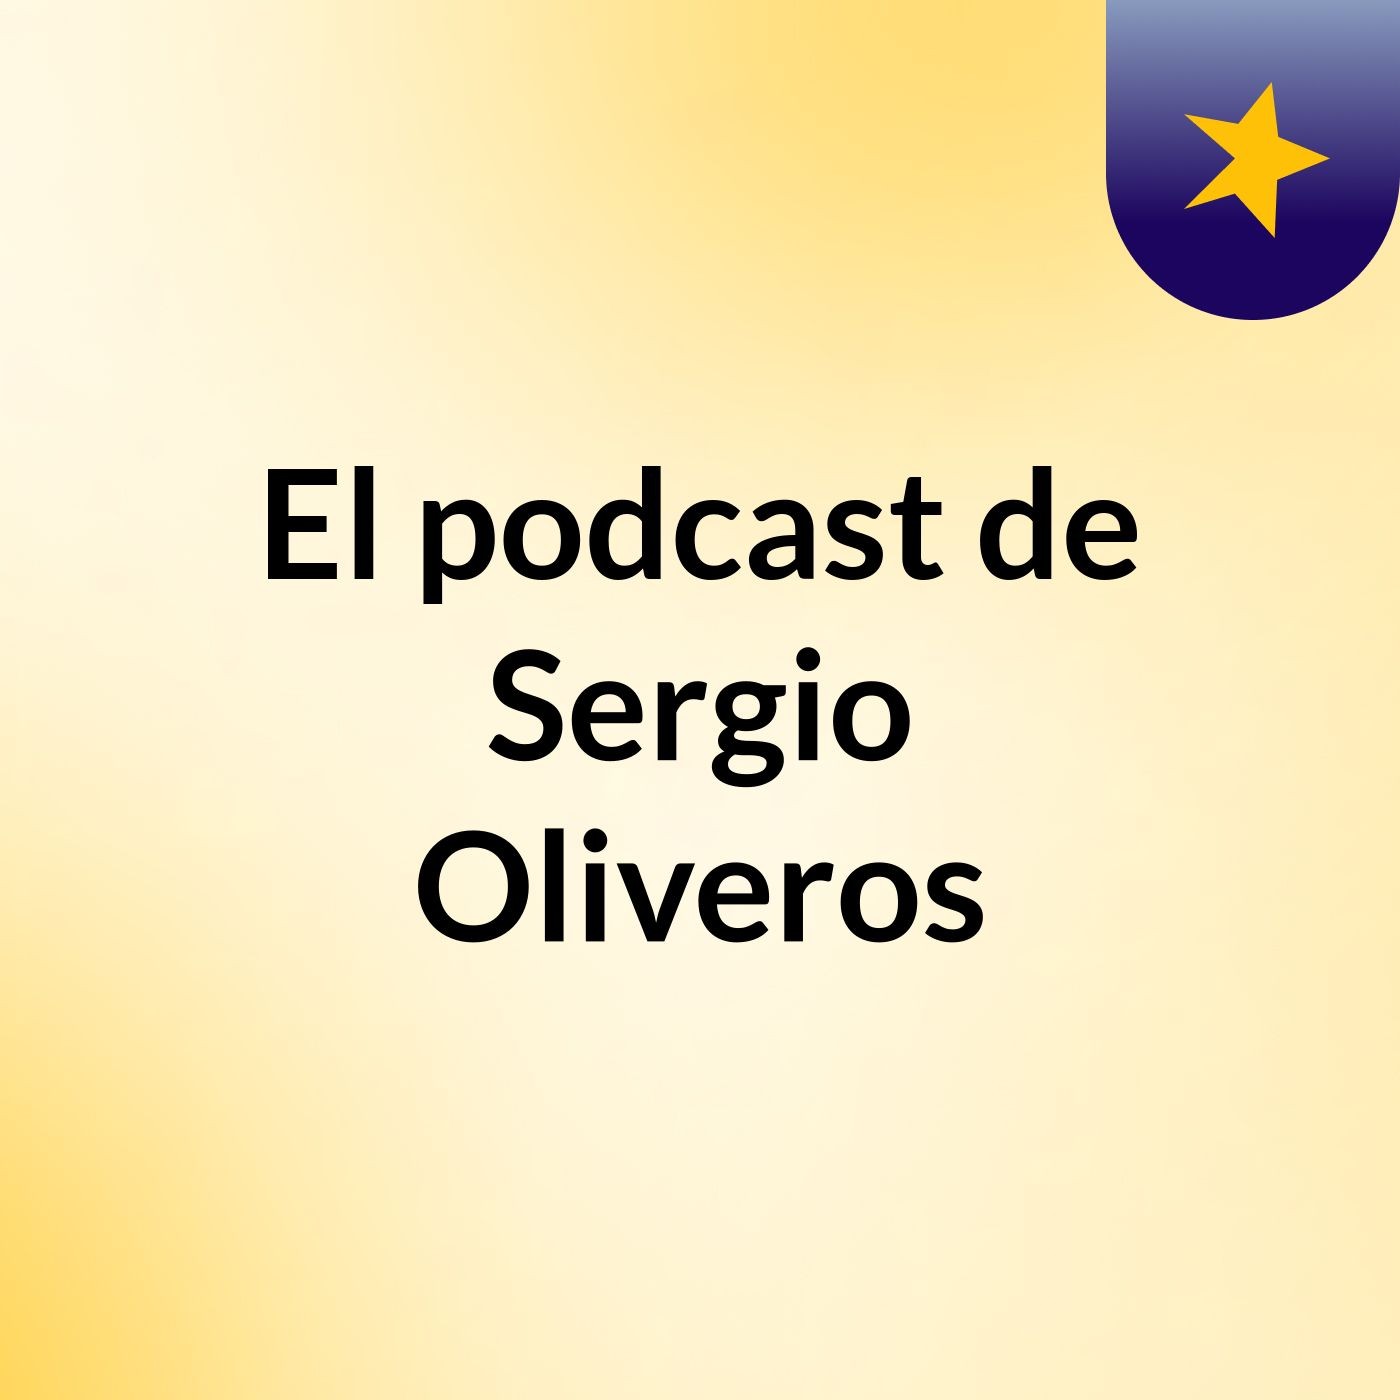 El podcast de Sergio Oliveros